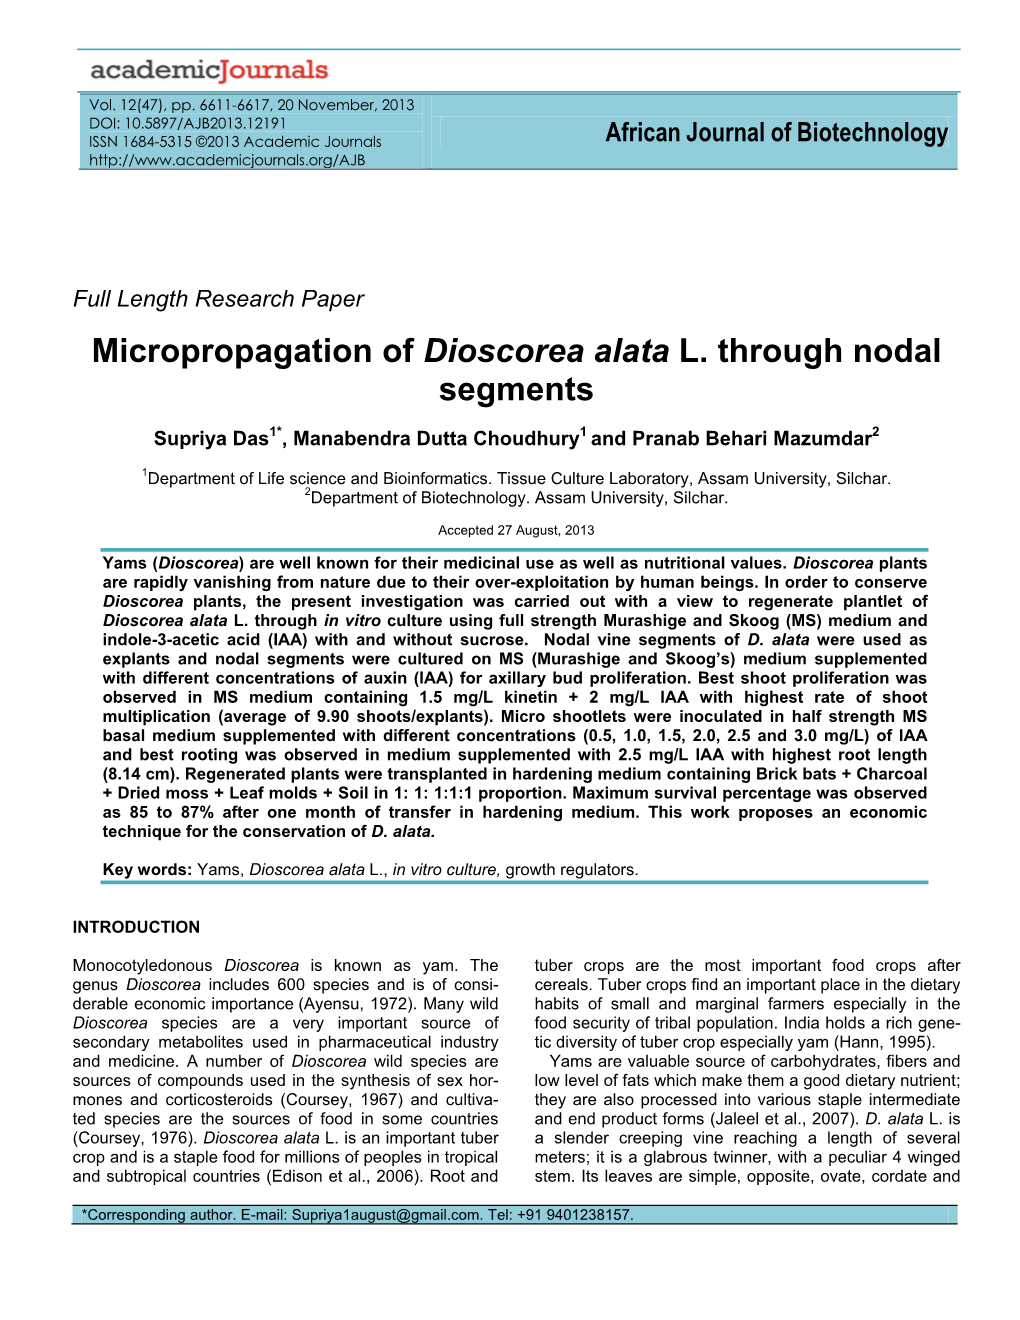 Micropropagation of Dioscorea Alata L. Through Nodal Segments